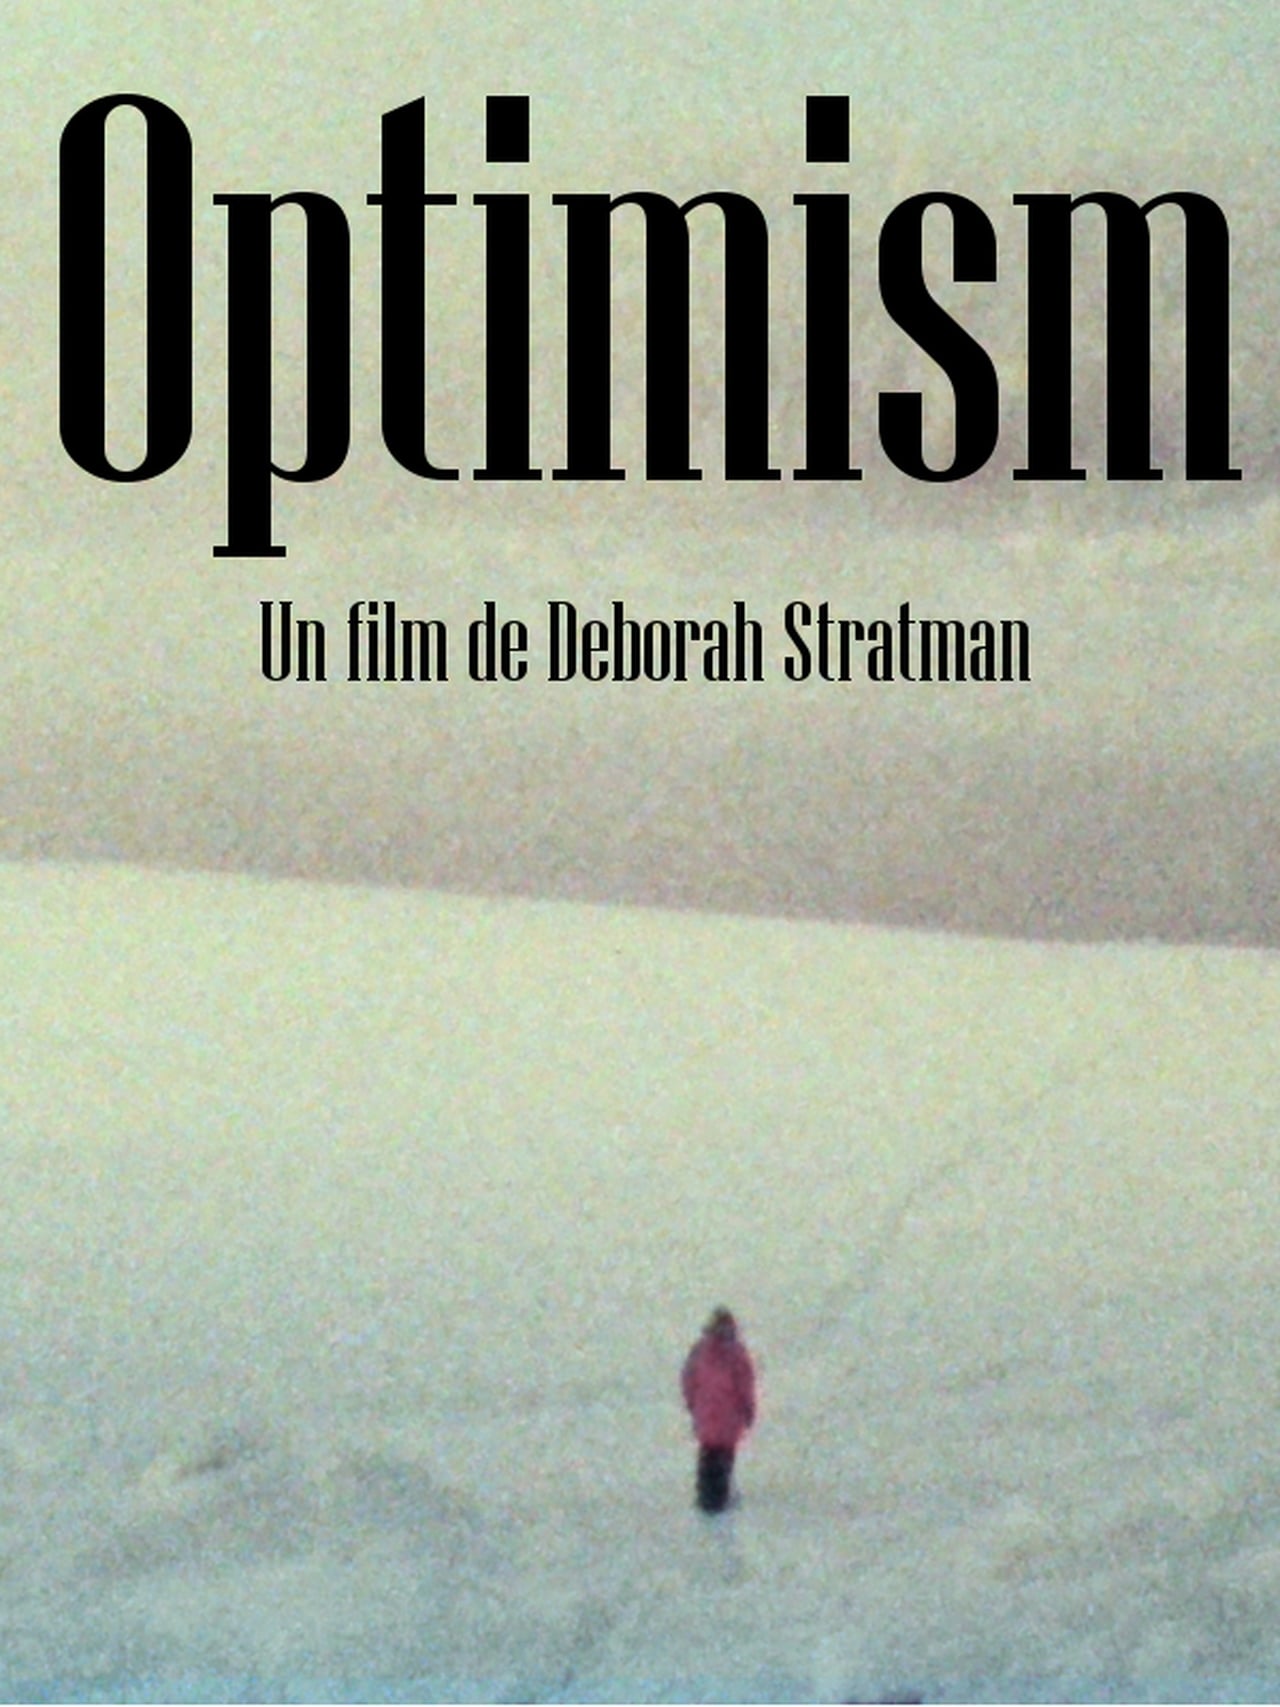 Optimism (2018)